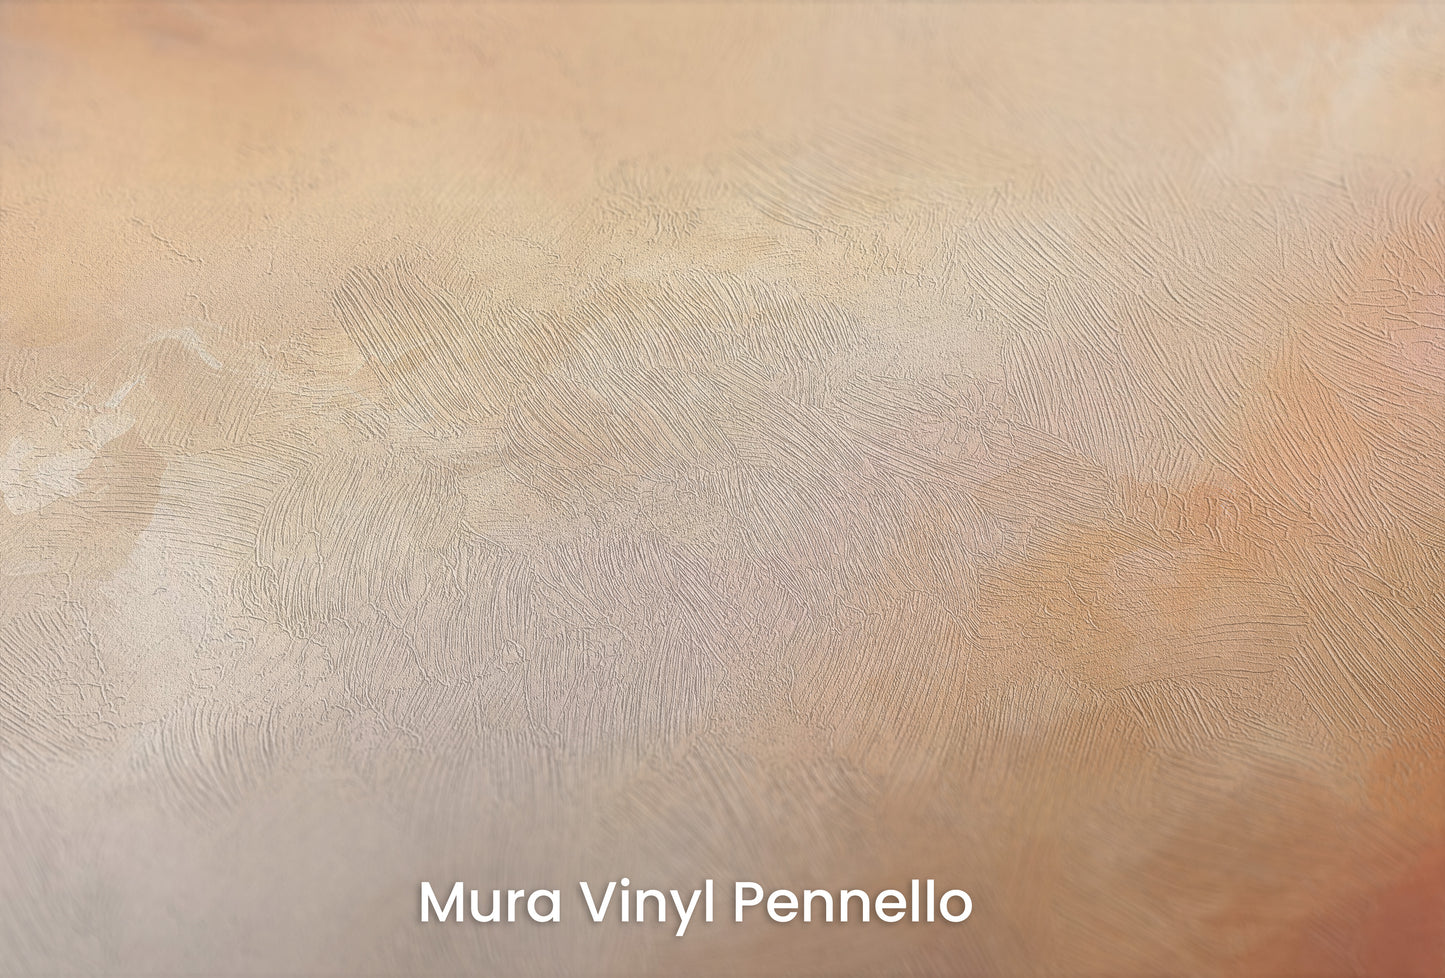 Zbliżenie na artystyczną fototapetę o nazwie AMBER SUNSET SWIRLS na podłożu Mura Vinyl Pennello - faktura pociągnięć pędzla malarskiego.